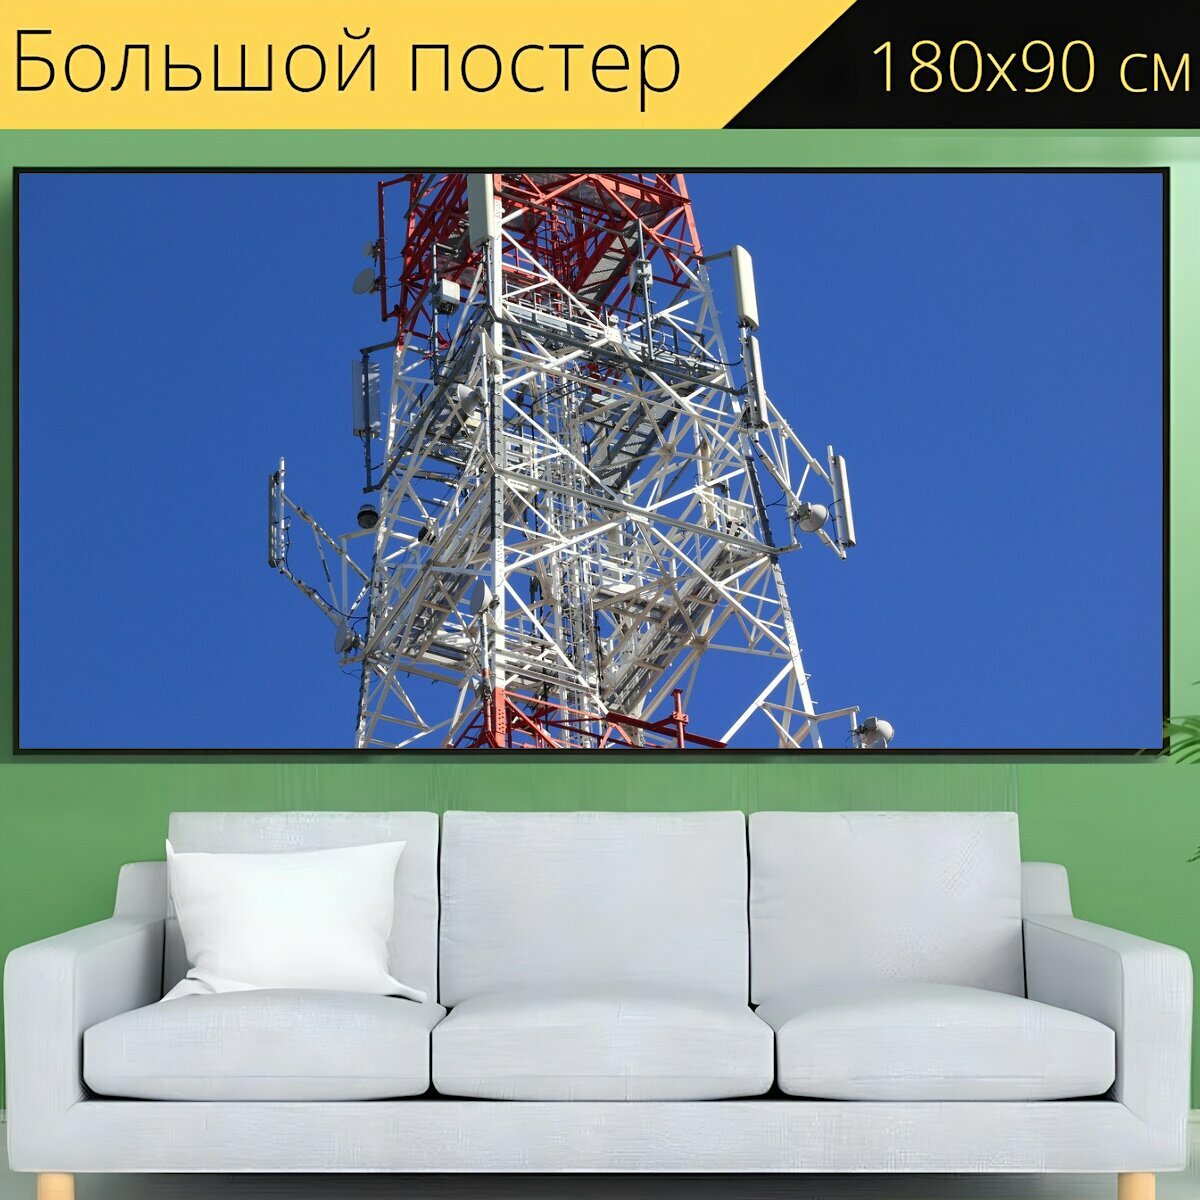 Большой постер "Польша, телеком, телекоммуникации" 180 x 90 см. для интерьера